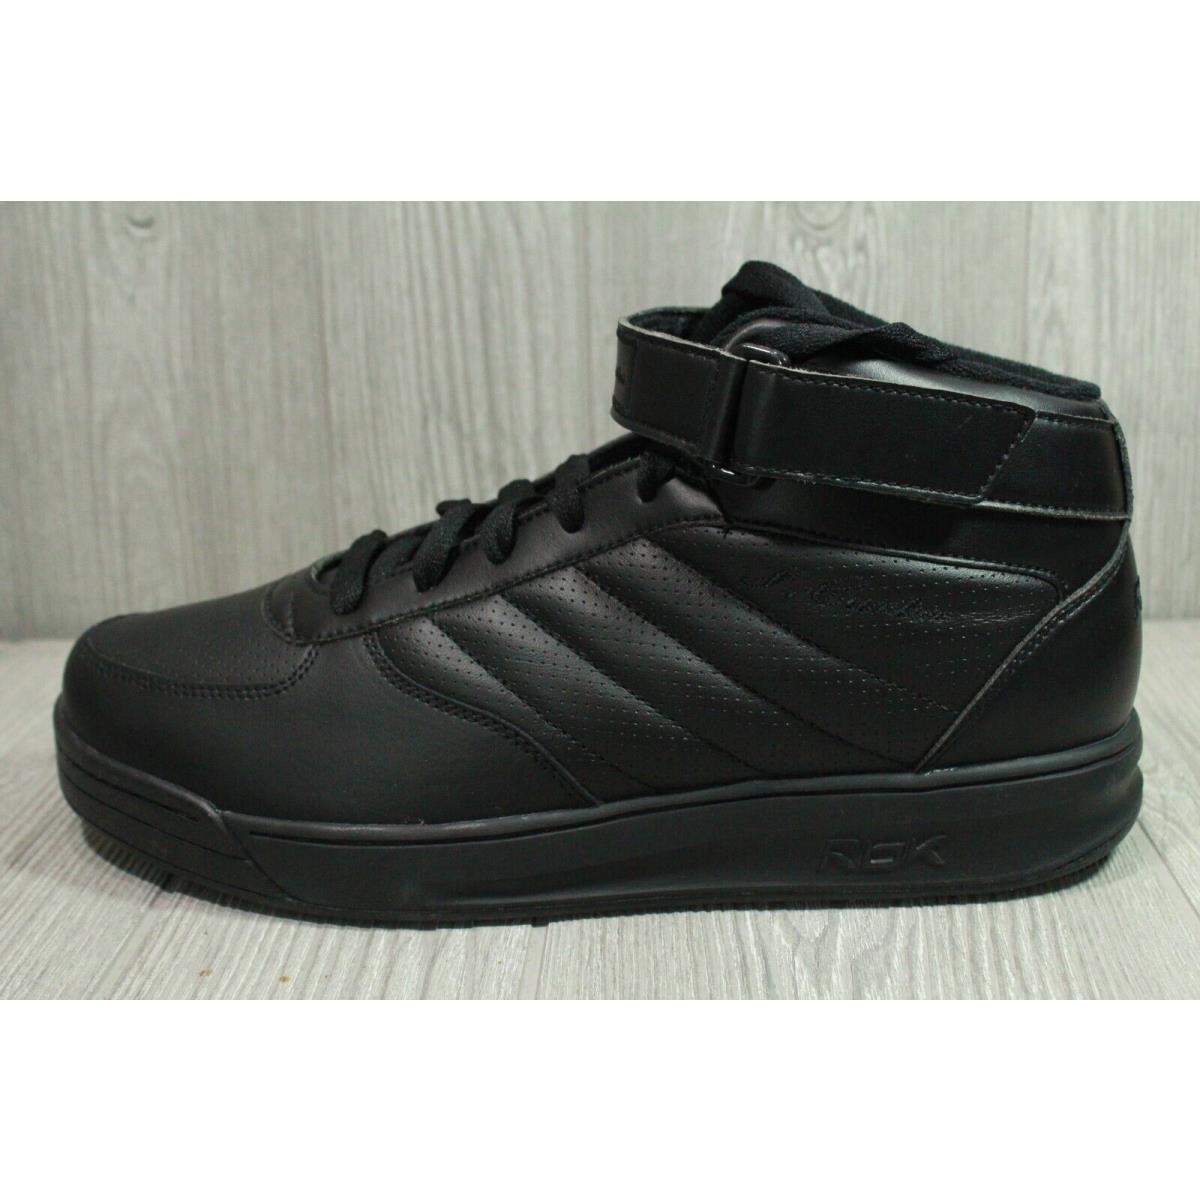 Vintage Reebok S. Carter Mid Black 2002 Basketball Shoes Mens Size 10.5